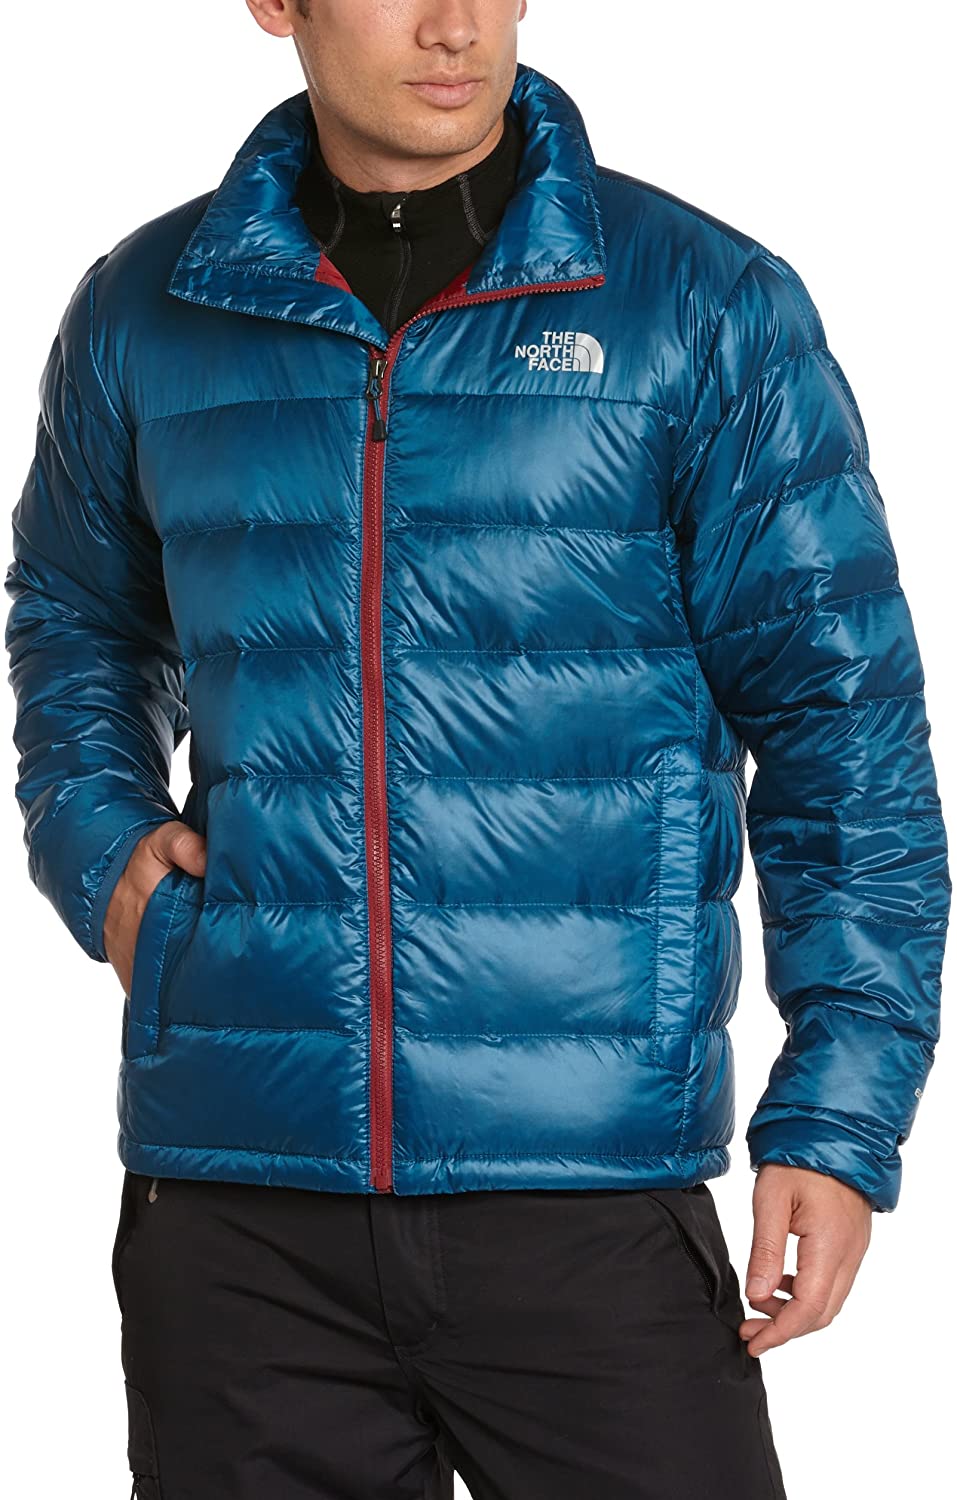 Chaqueta The North Face de plumón hombre cálida Jacke La Paz Jacket Ref.  T0A7M044A Azul - Martimpe Berart - Tienda de Moda en Gausach, Vielha, Valle  de Aran